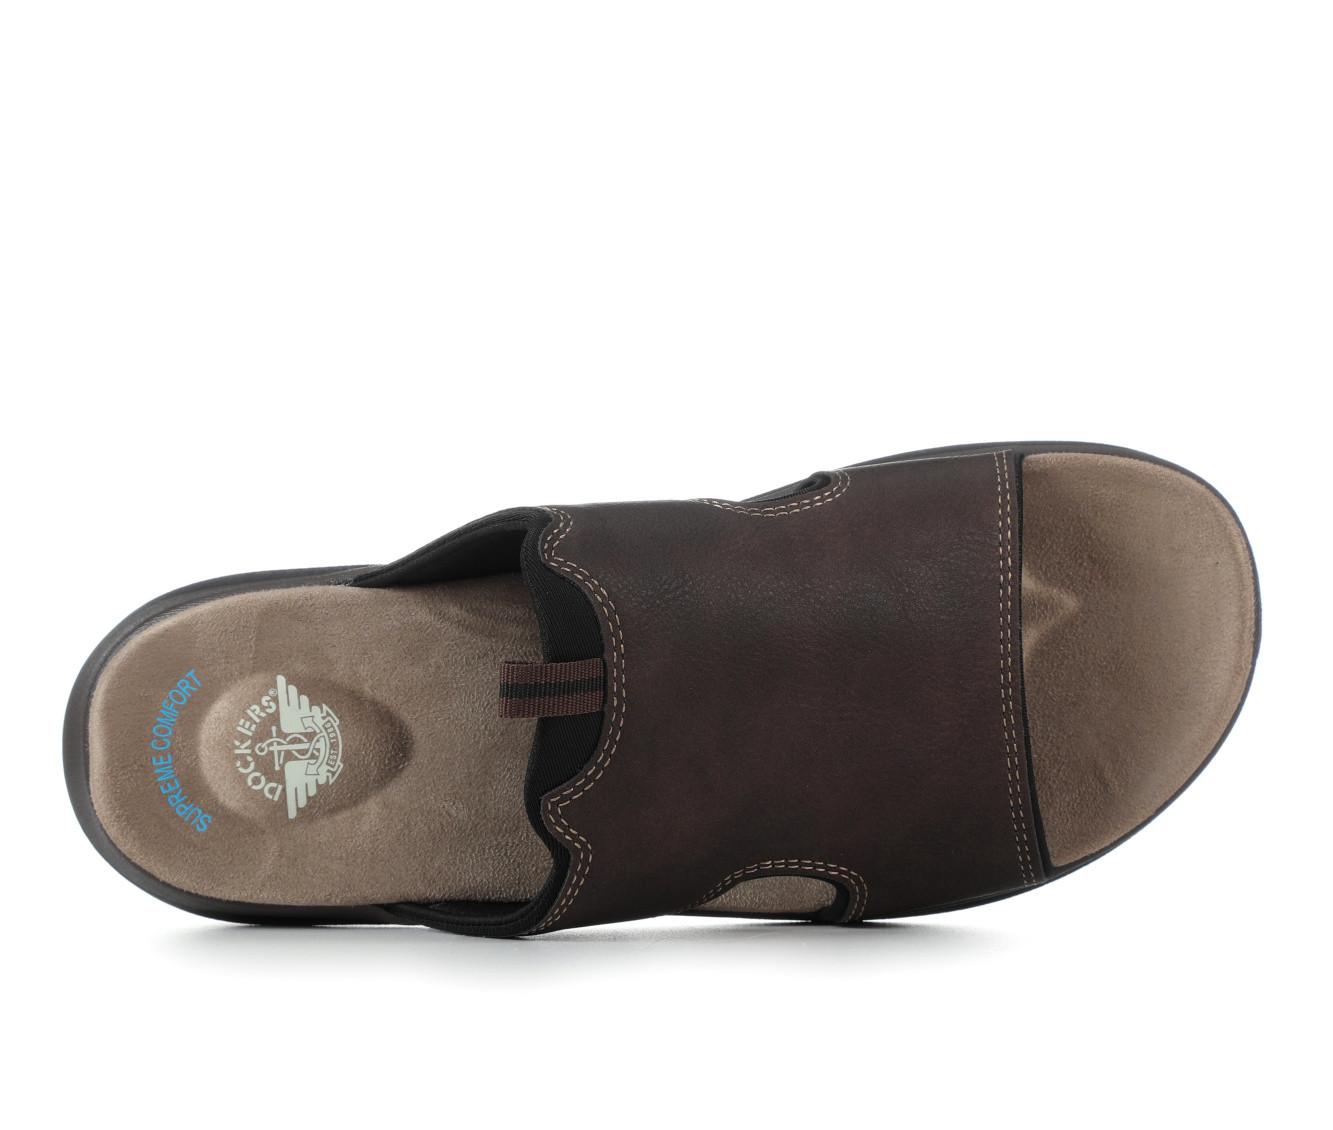 Men's Dockers Barlin Outdoor Sandals